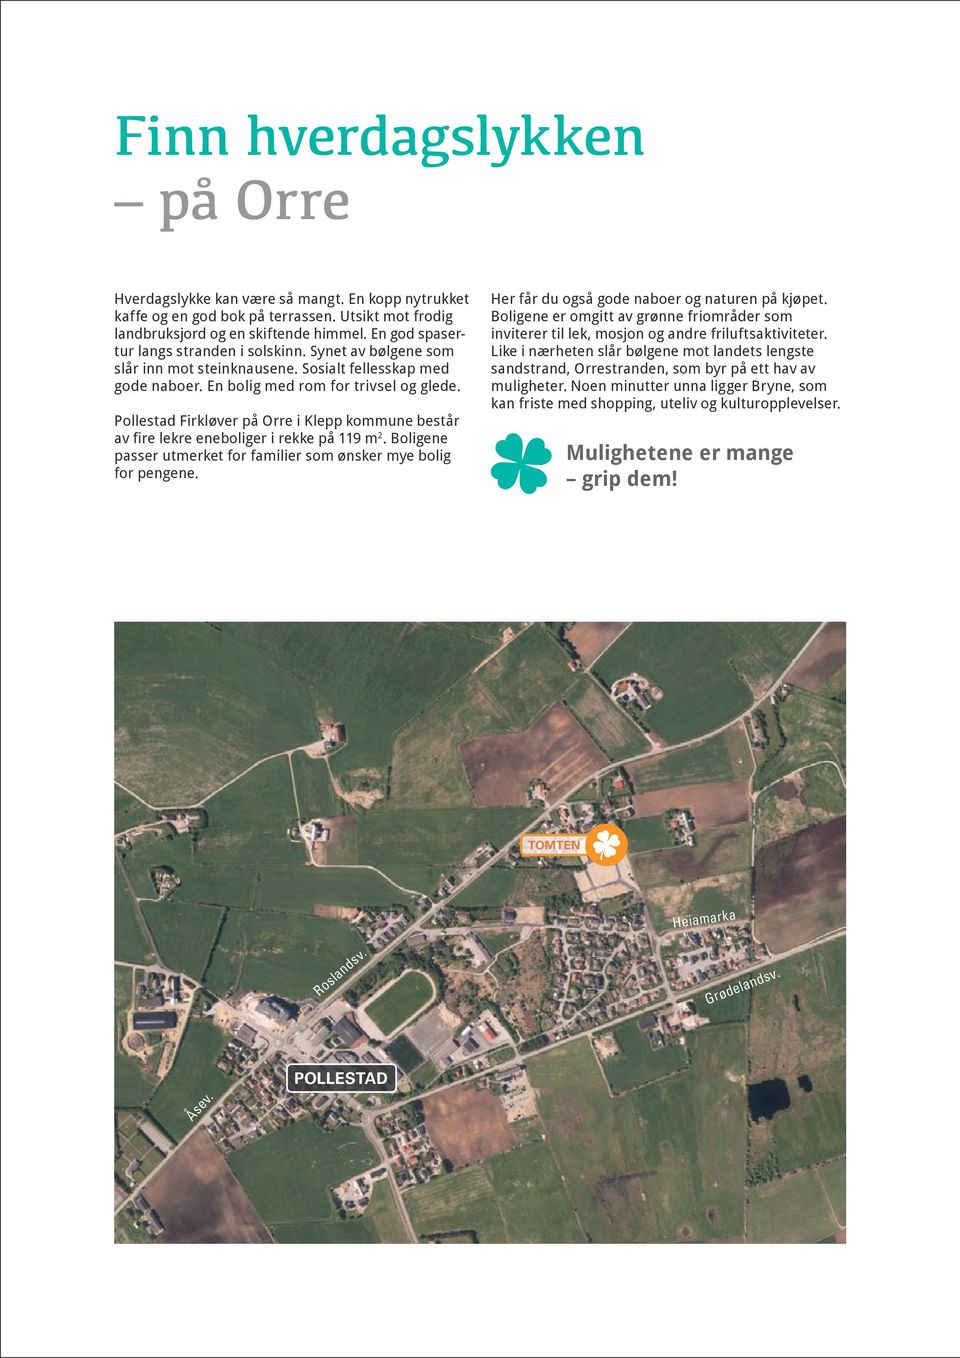 Pollestad Firkløver på Orre i Klepp kommune består av fire lekre eneboliger i rekke på 119 m 2. Boligene passer utmerket for familier som ønsker mye bolig for pengene.